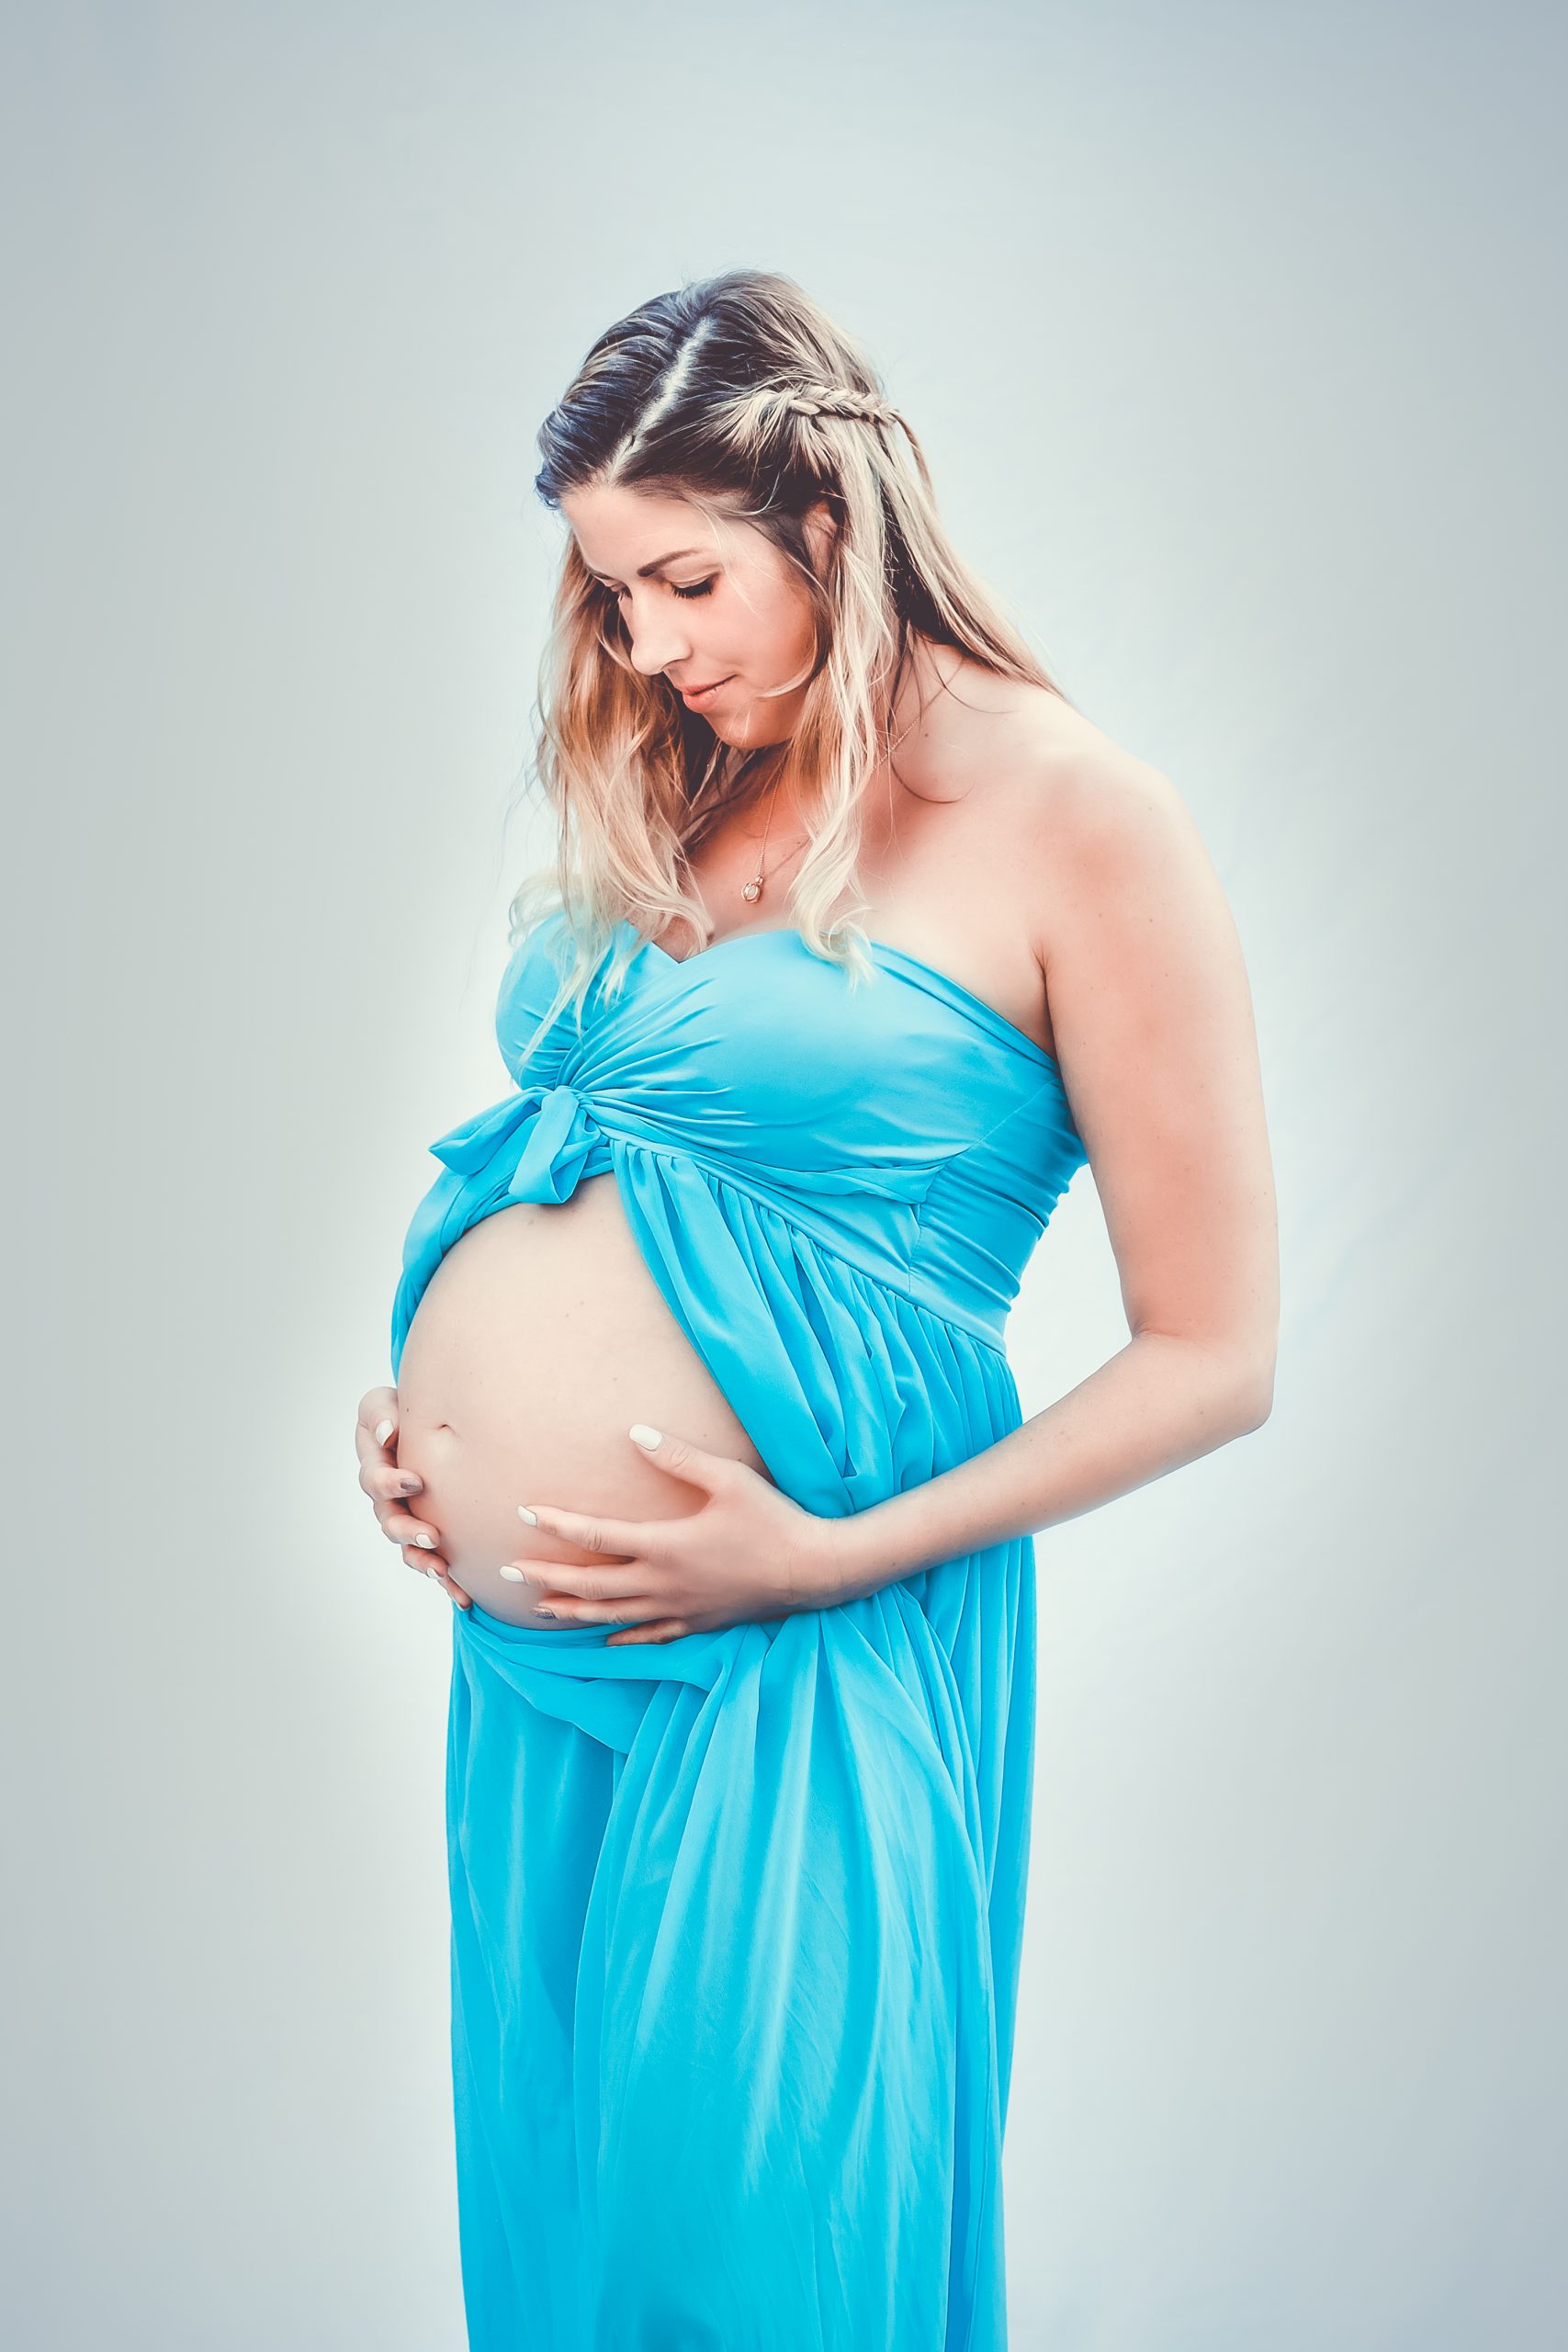 Schwangere umgebung kennenlernen